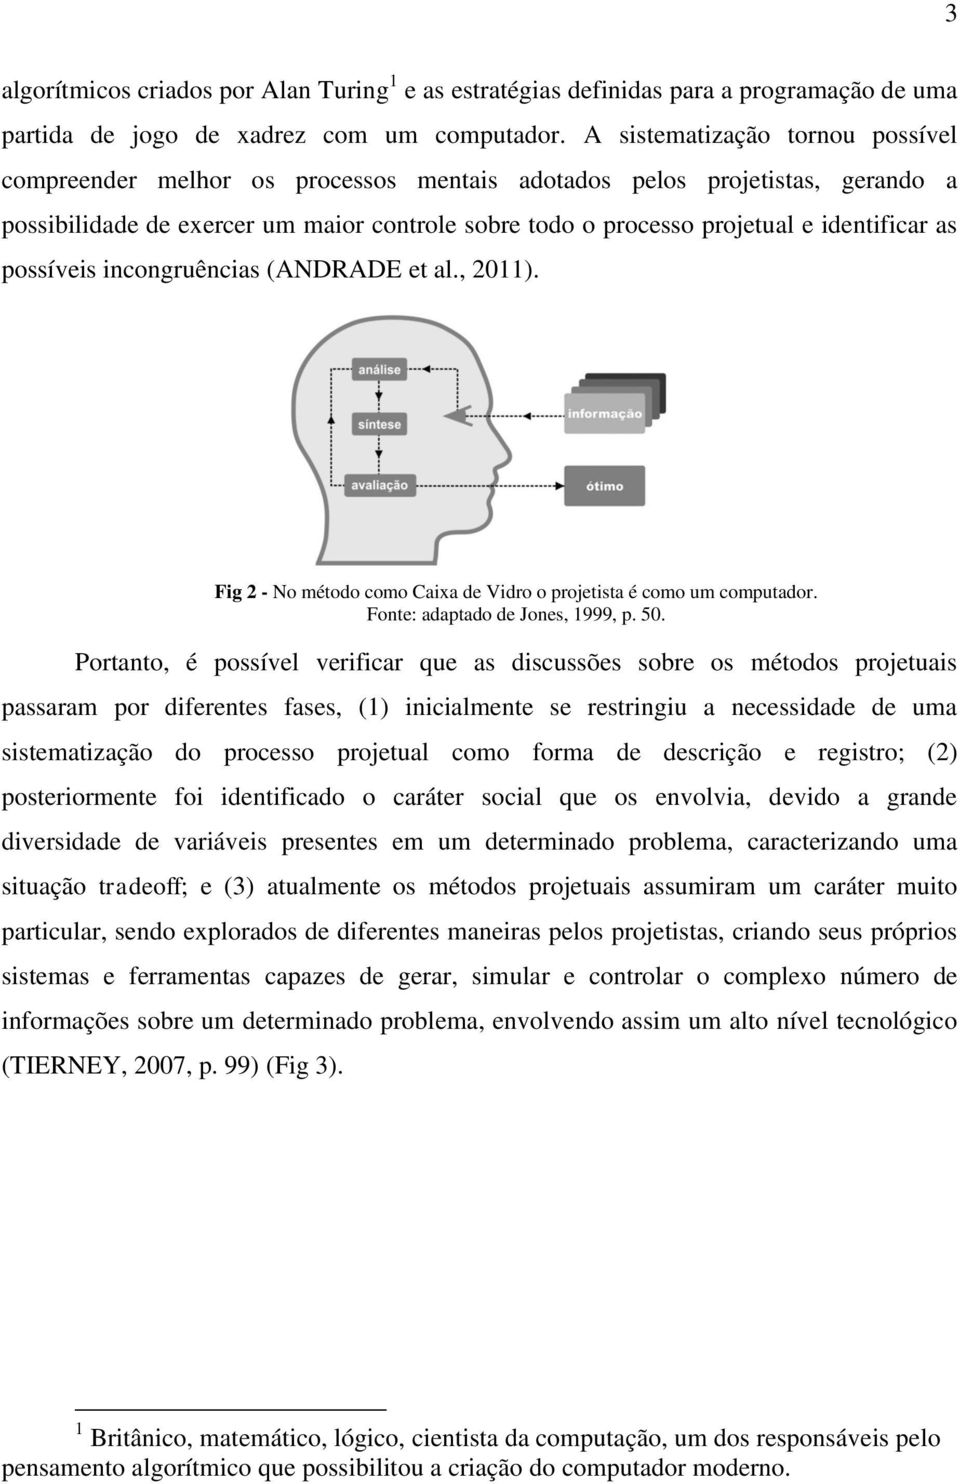 as possíveis incongruências (ANDRADE et al., 2011). Fig 2 - No método como Caixa de Vidro o projetista é como um computador. Fonte: adaptado de Jones, 1999, p. 50.